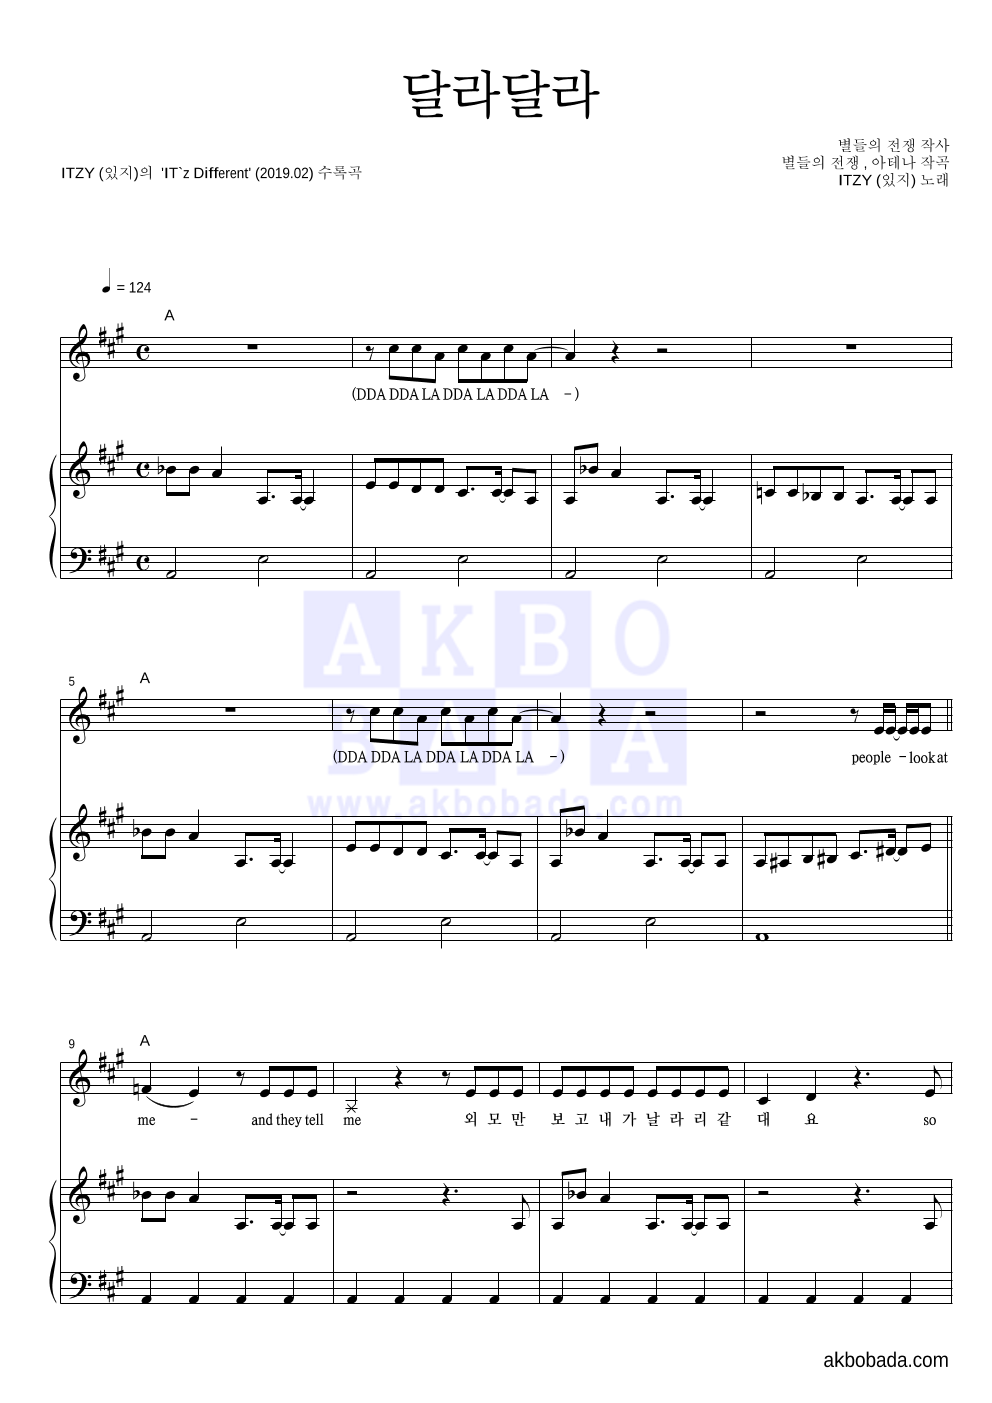 ITZY(있지) - 달라달라 피아노 3단 악보 